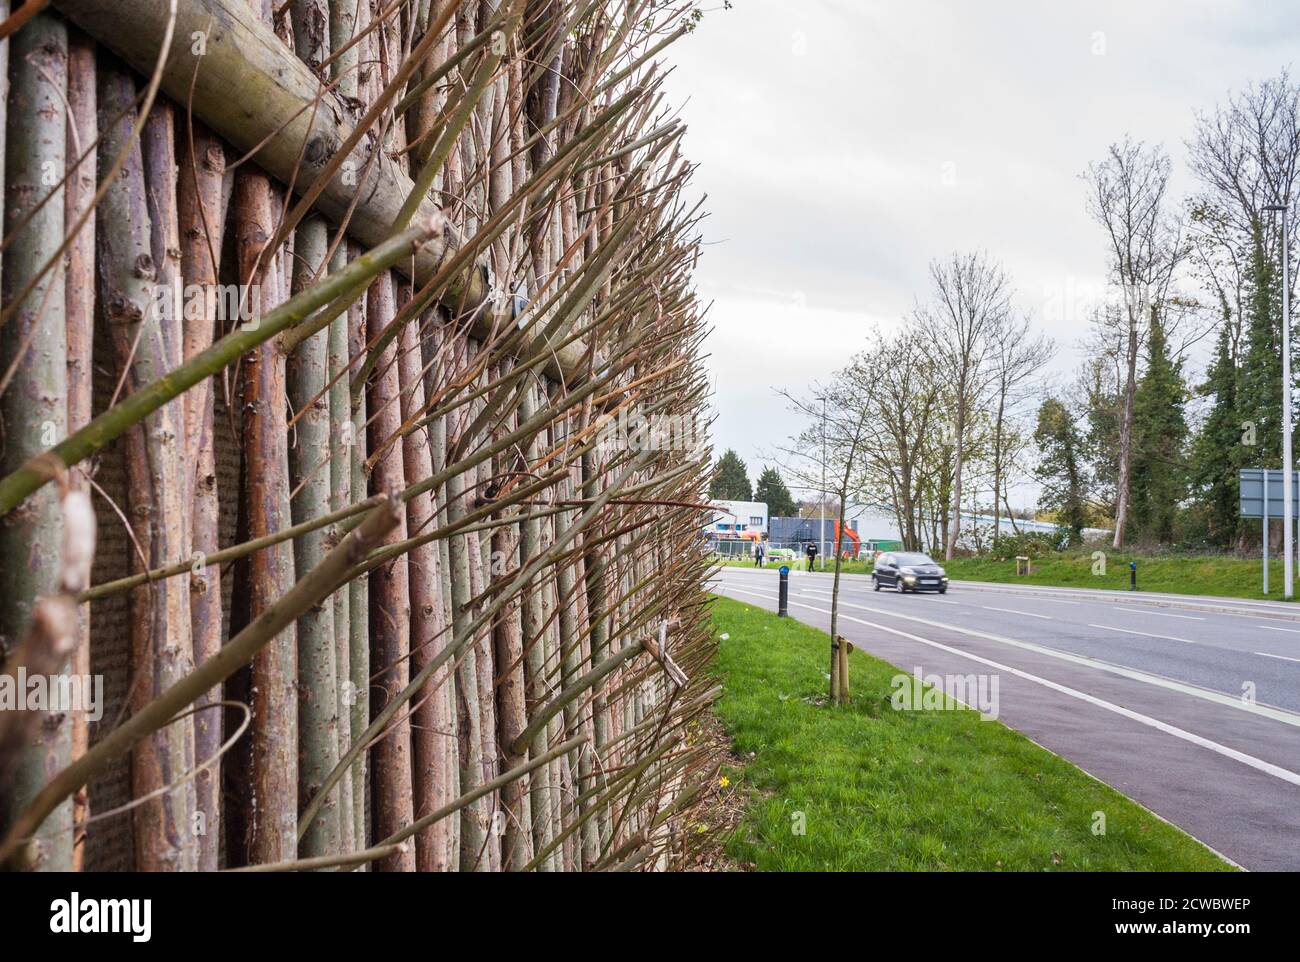 Clôture faite d'arbres et d'arbustes en pleine croissance pour servir de barrière naturelle de réduction du bruit sur une route principale. Wokingham, Berkshire, Angleterre, GB, Royaume-Uni Banque D'Images